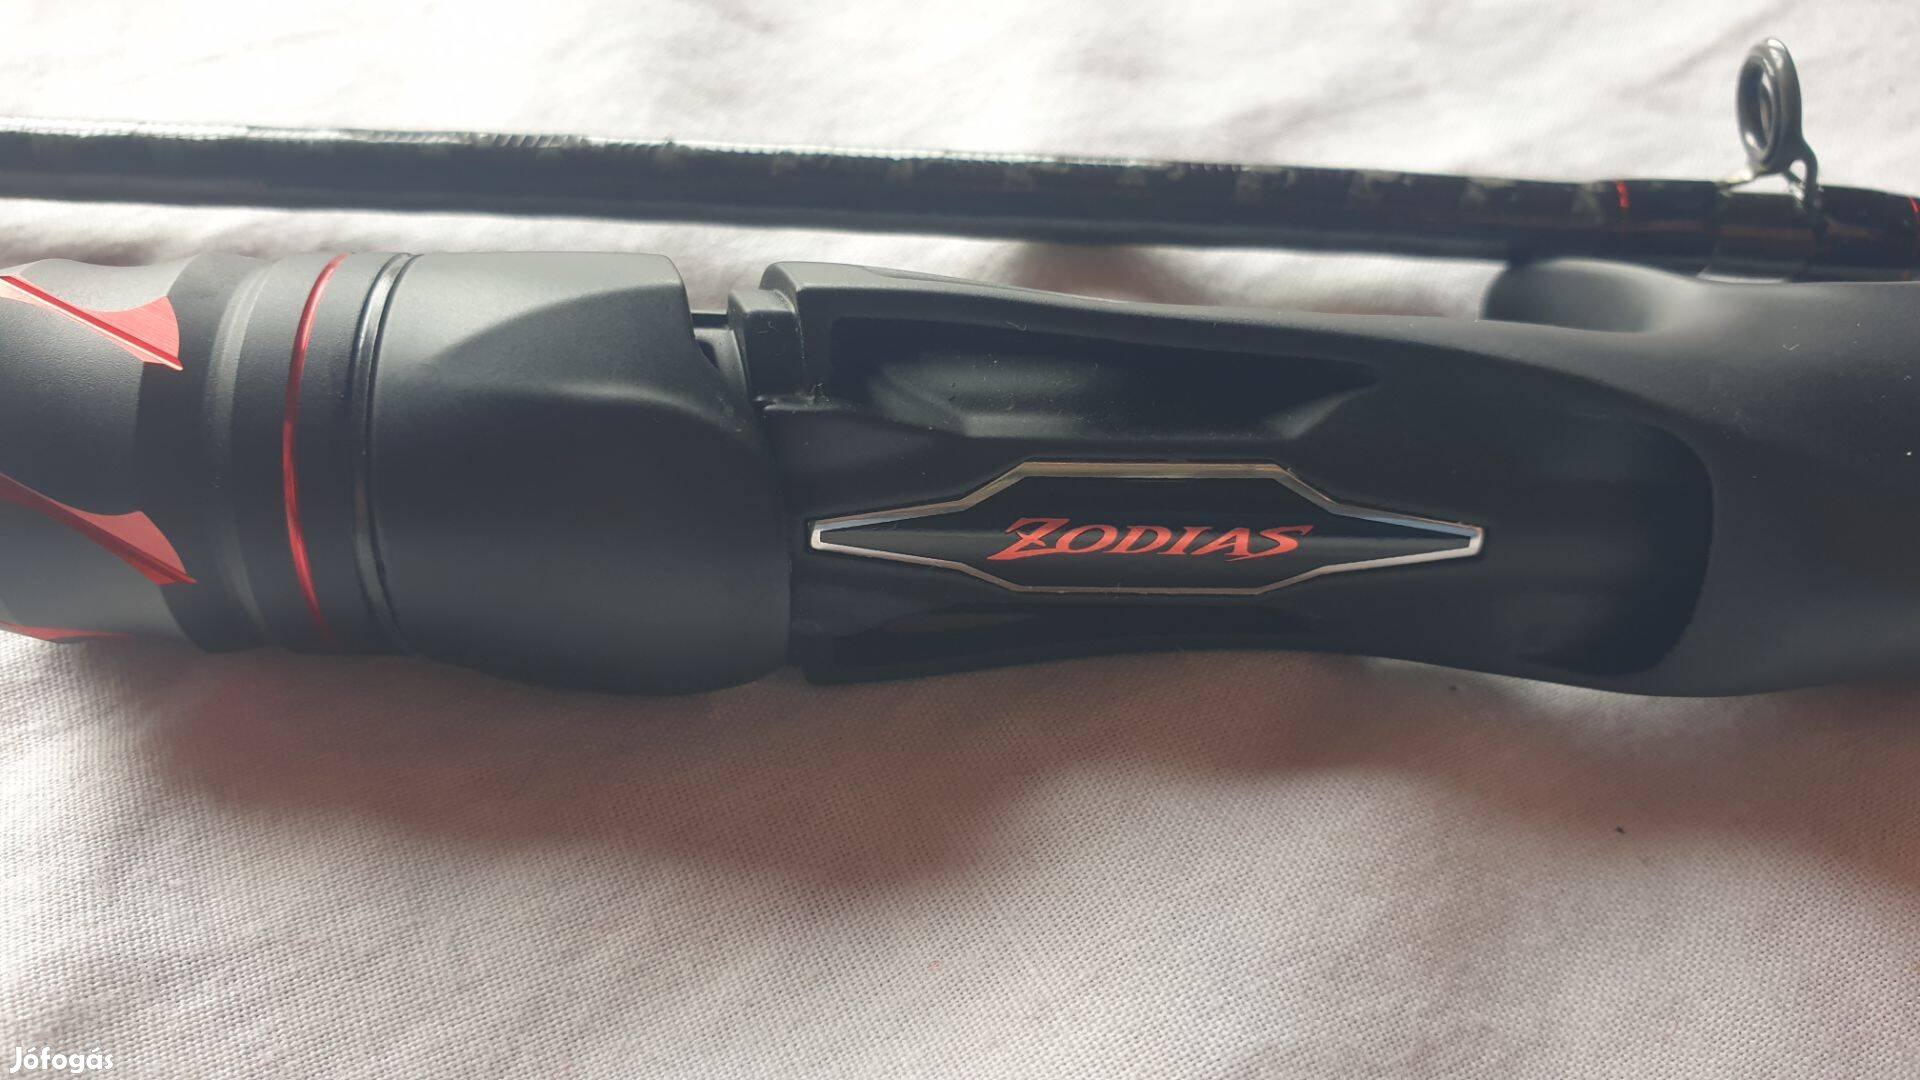 Shimano Zodias nyéltoldós teljesen új multis bot ár alatt eladó 7-21g